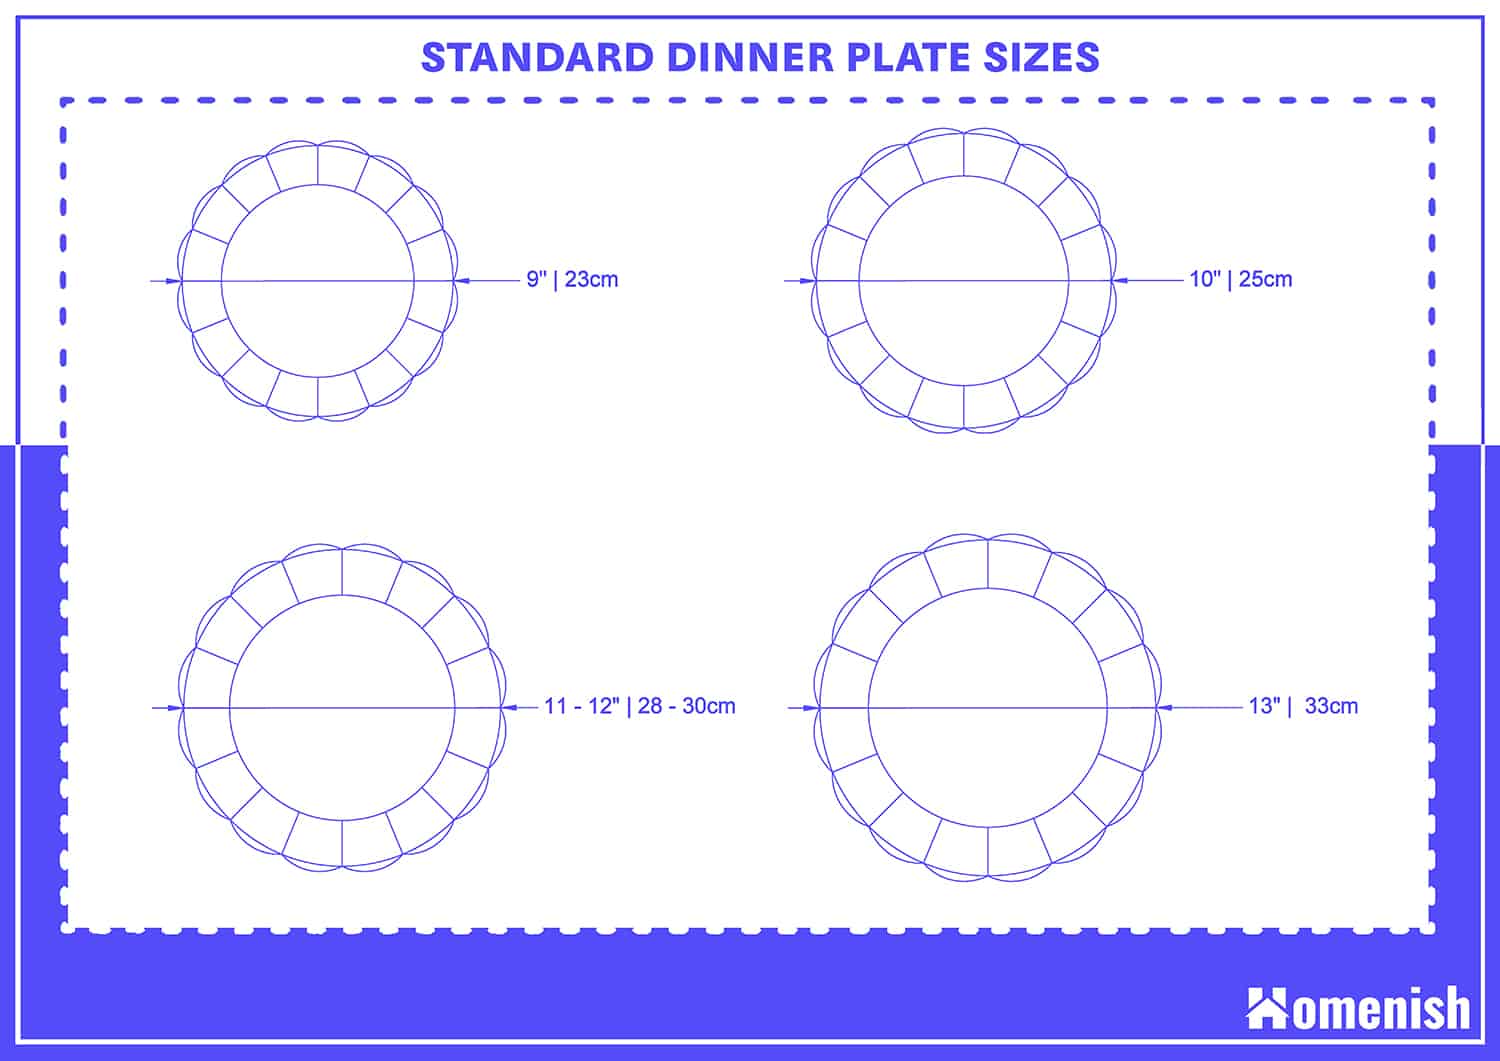 Standard Dinner Plate Sizes